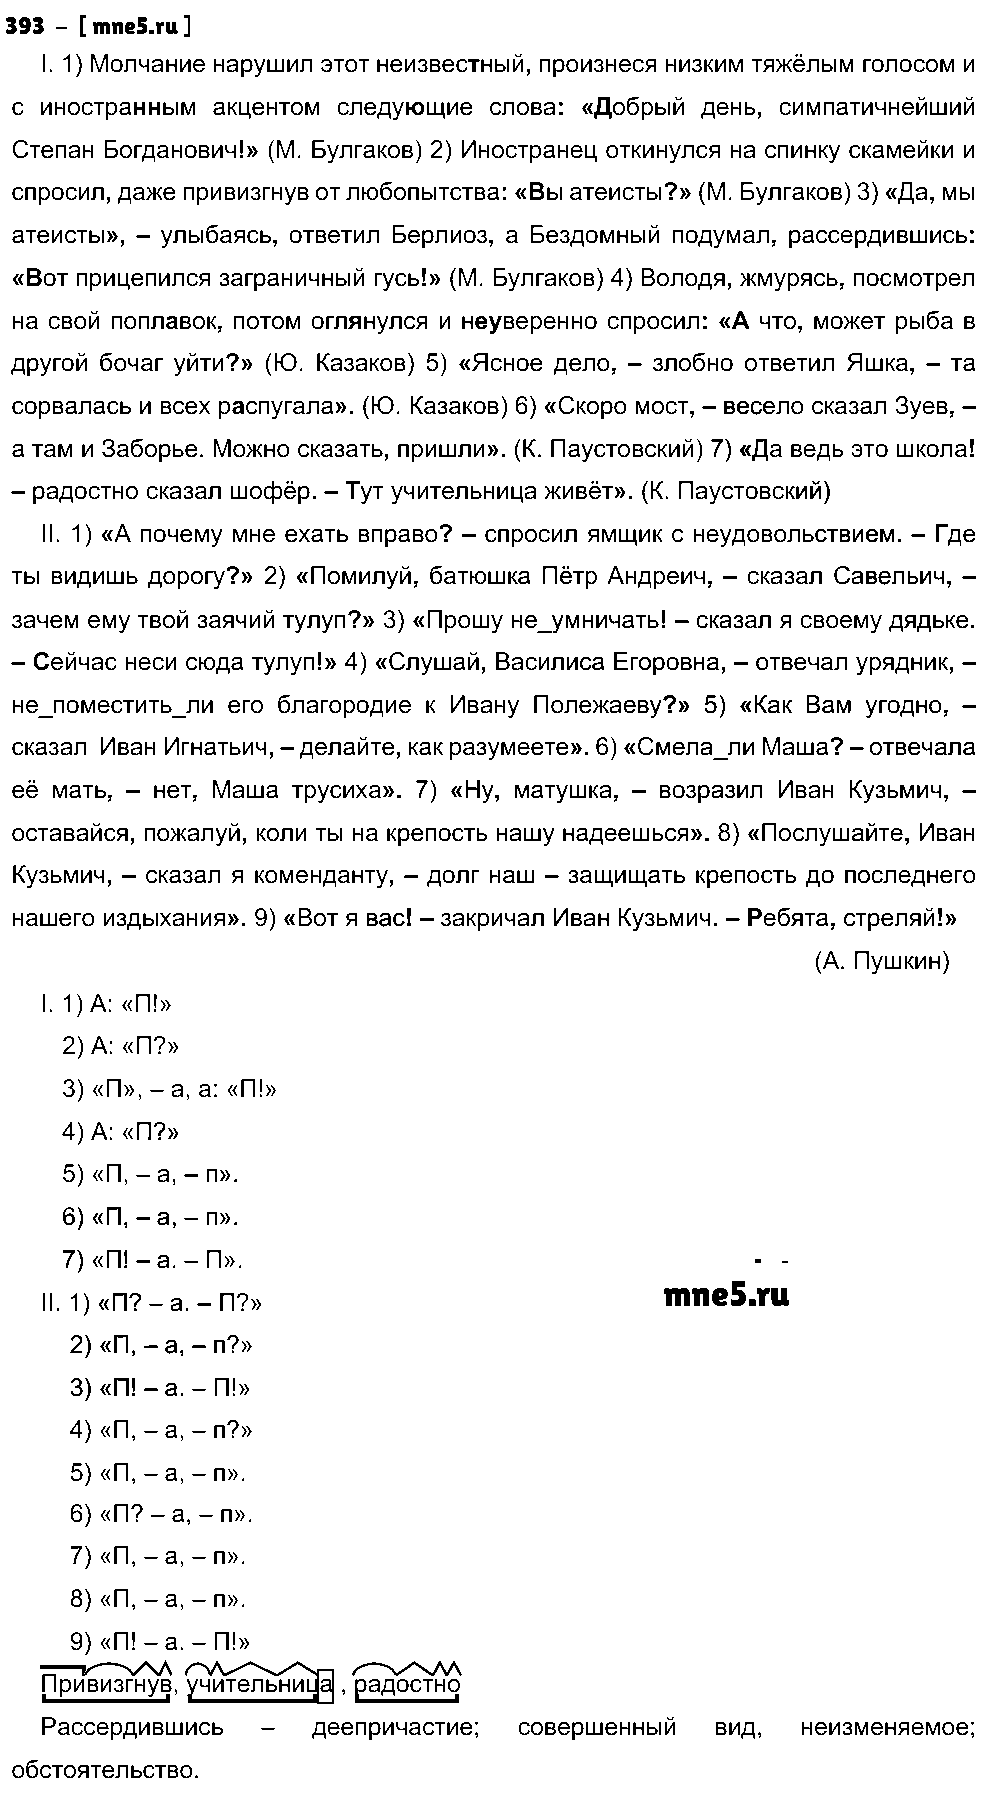 ГДЗ Русский язык 8 класс - 393